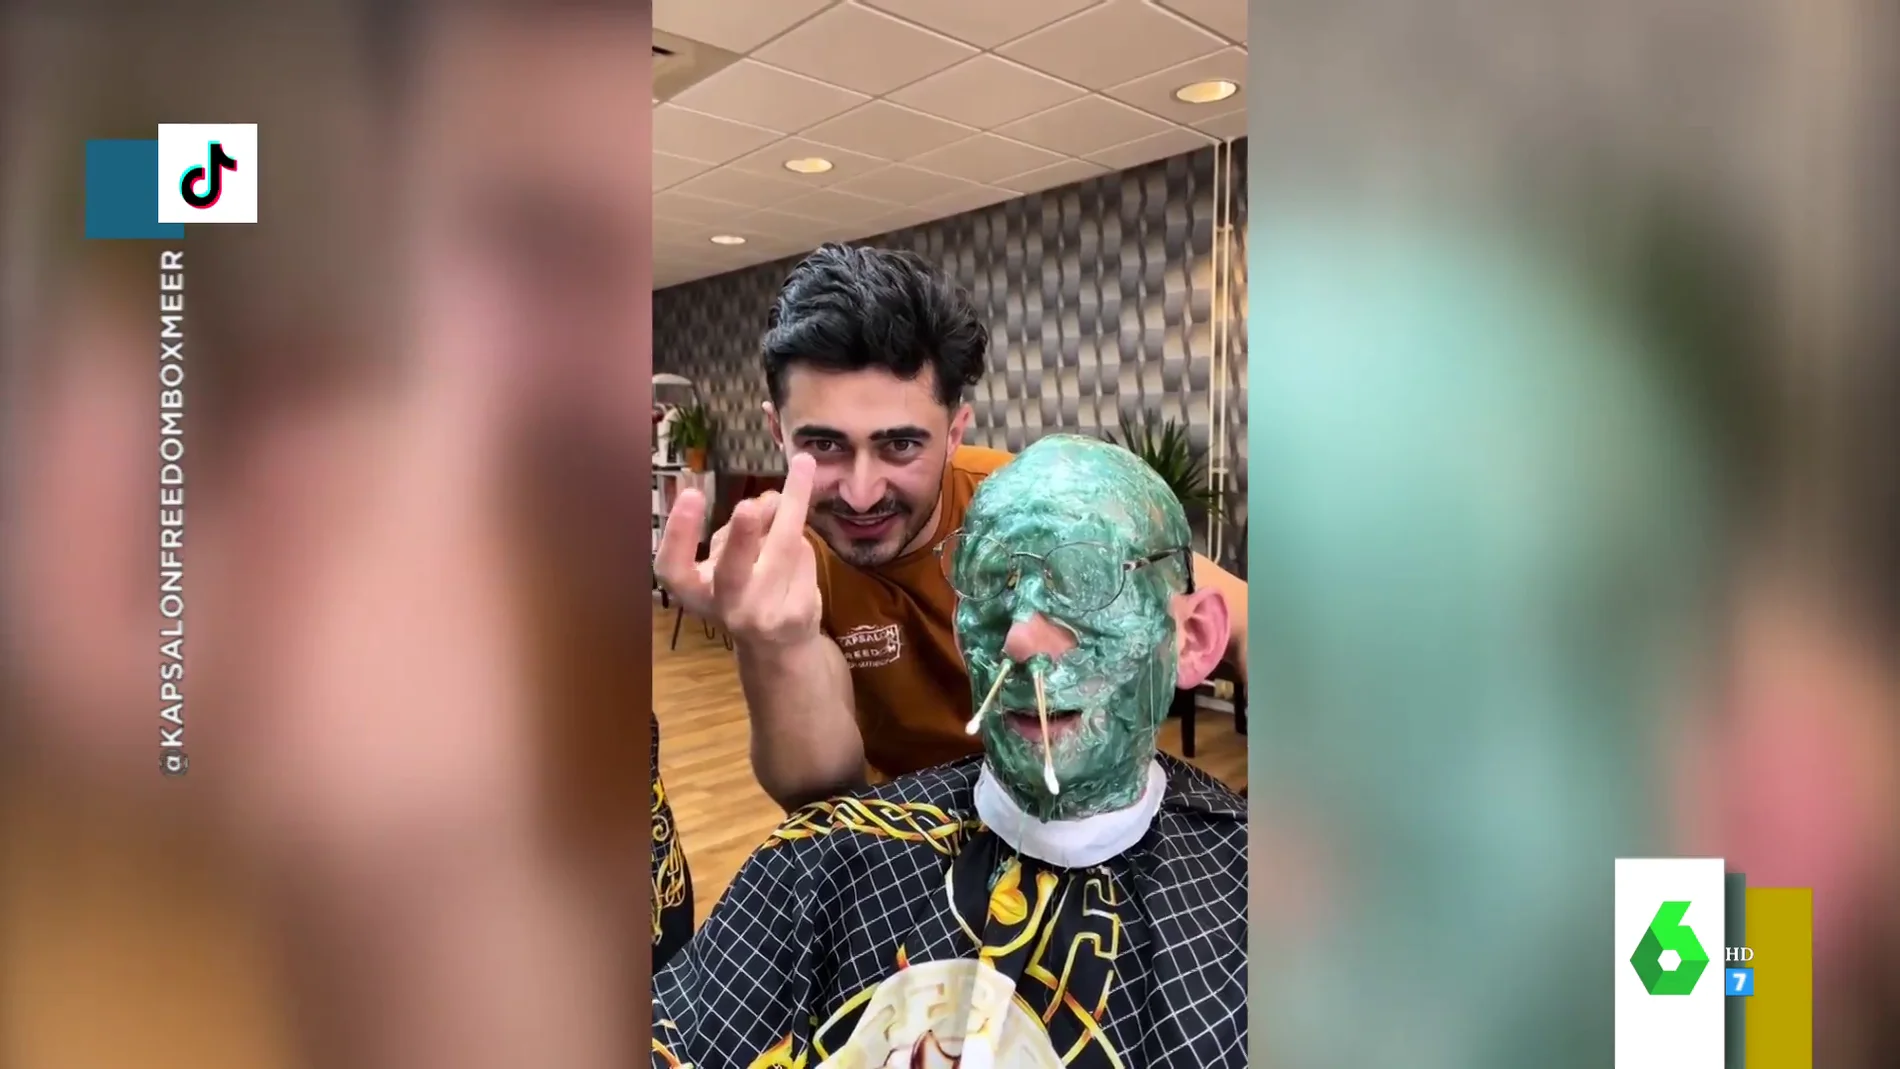 Los vídeos virales del peluquero que corta el pelo con cera en Tik Tok: así es el duro momento en el que se la quita de la cara